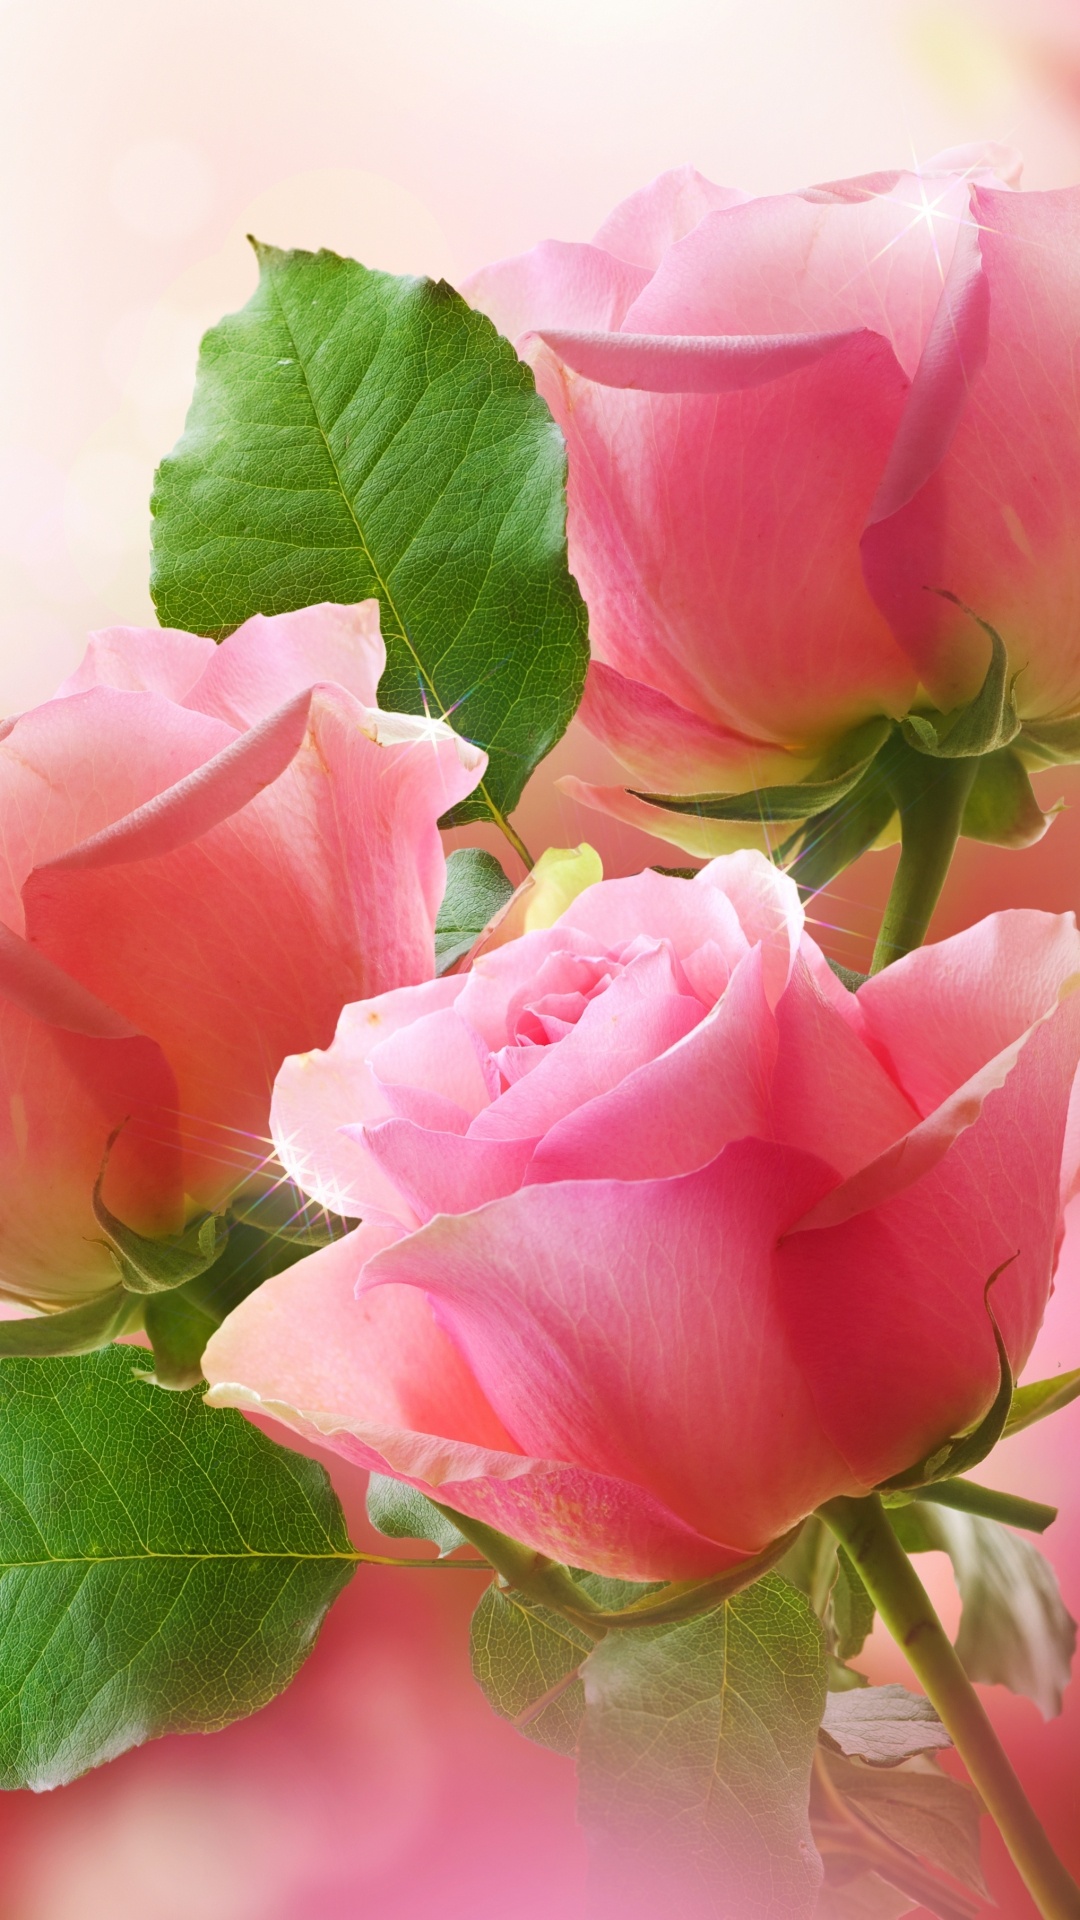 花卉设计, 粉红色, 显花植物, 玫瑰花园, 玫瑰家庭 壁纸 1080x1920 允许